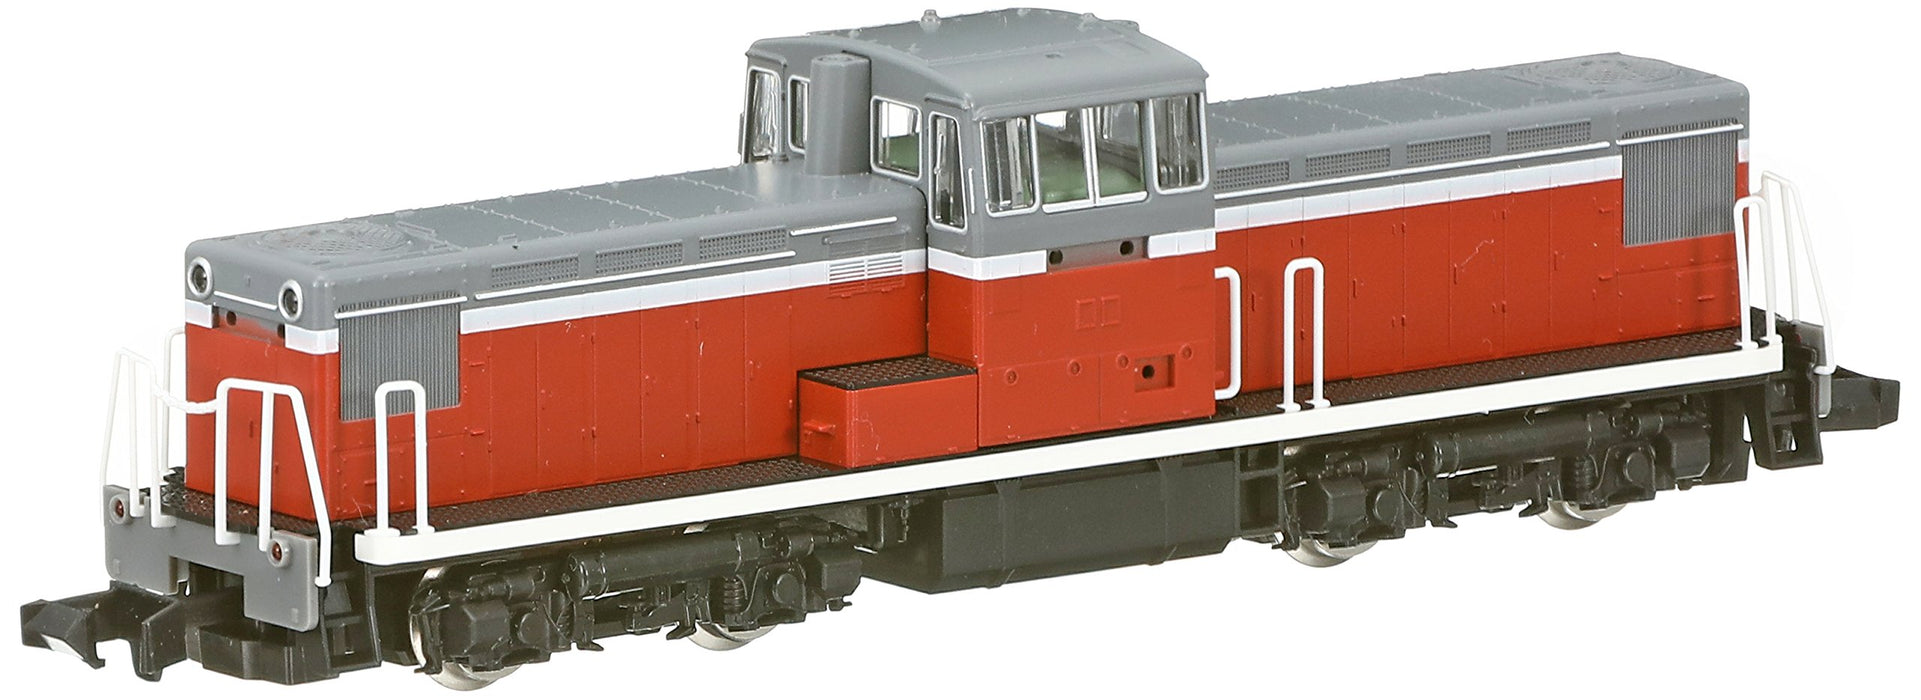 Tomytec Tomix N Gauge DD13 300 Diesel Locomotive - 2227 General Model Railway